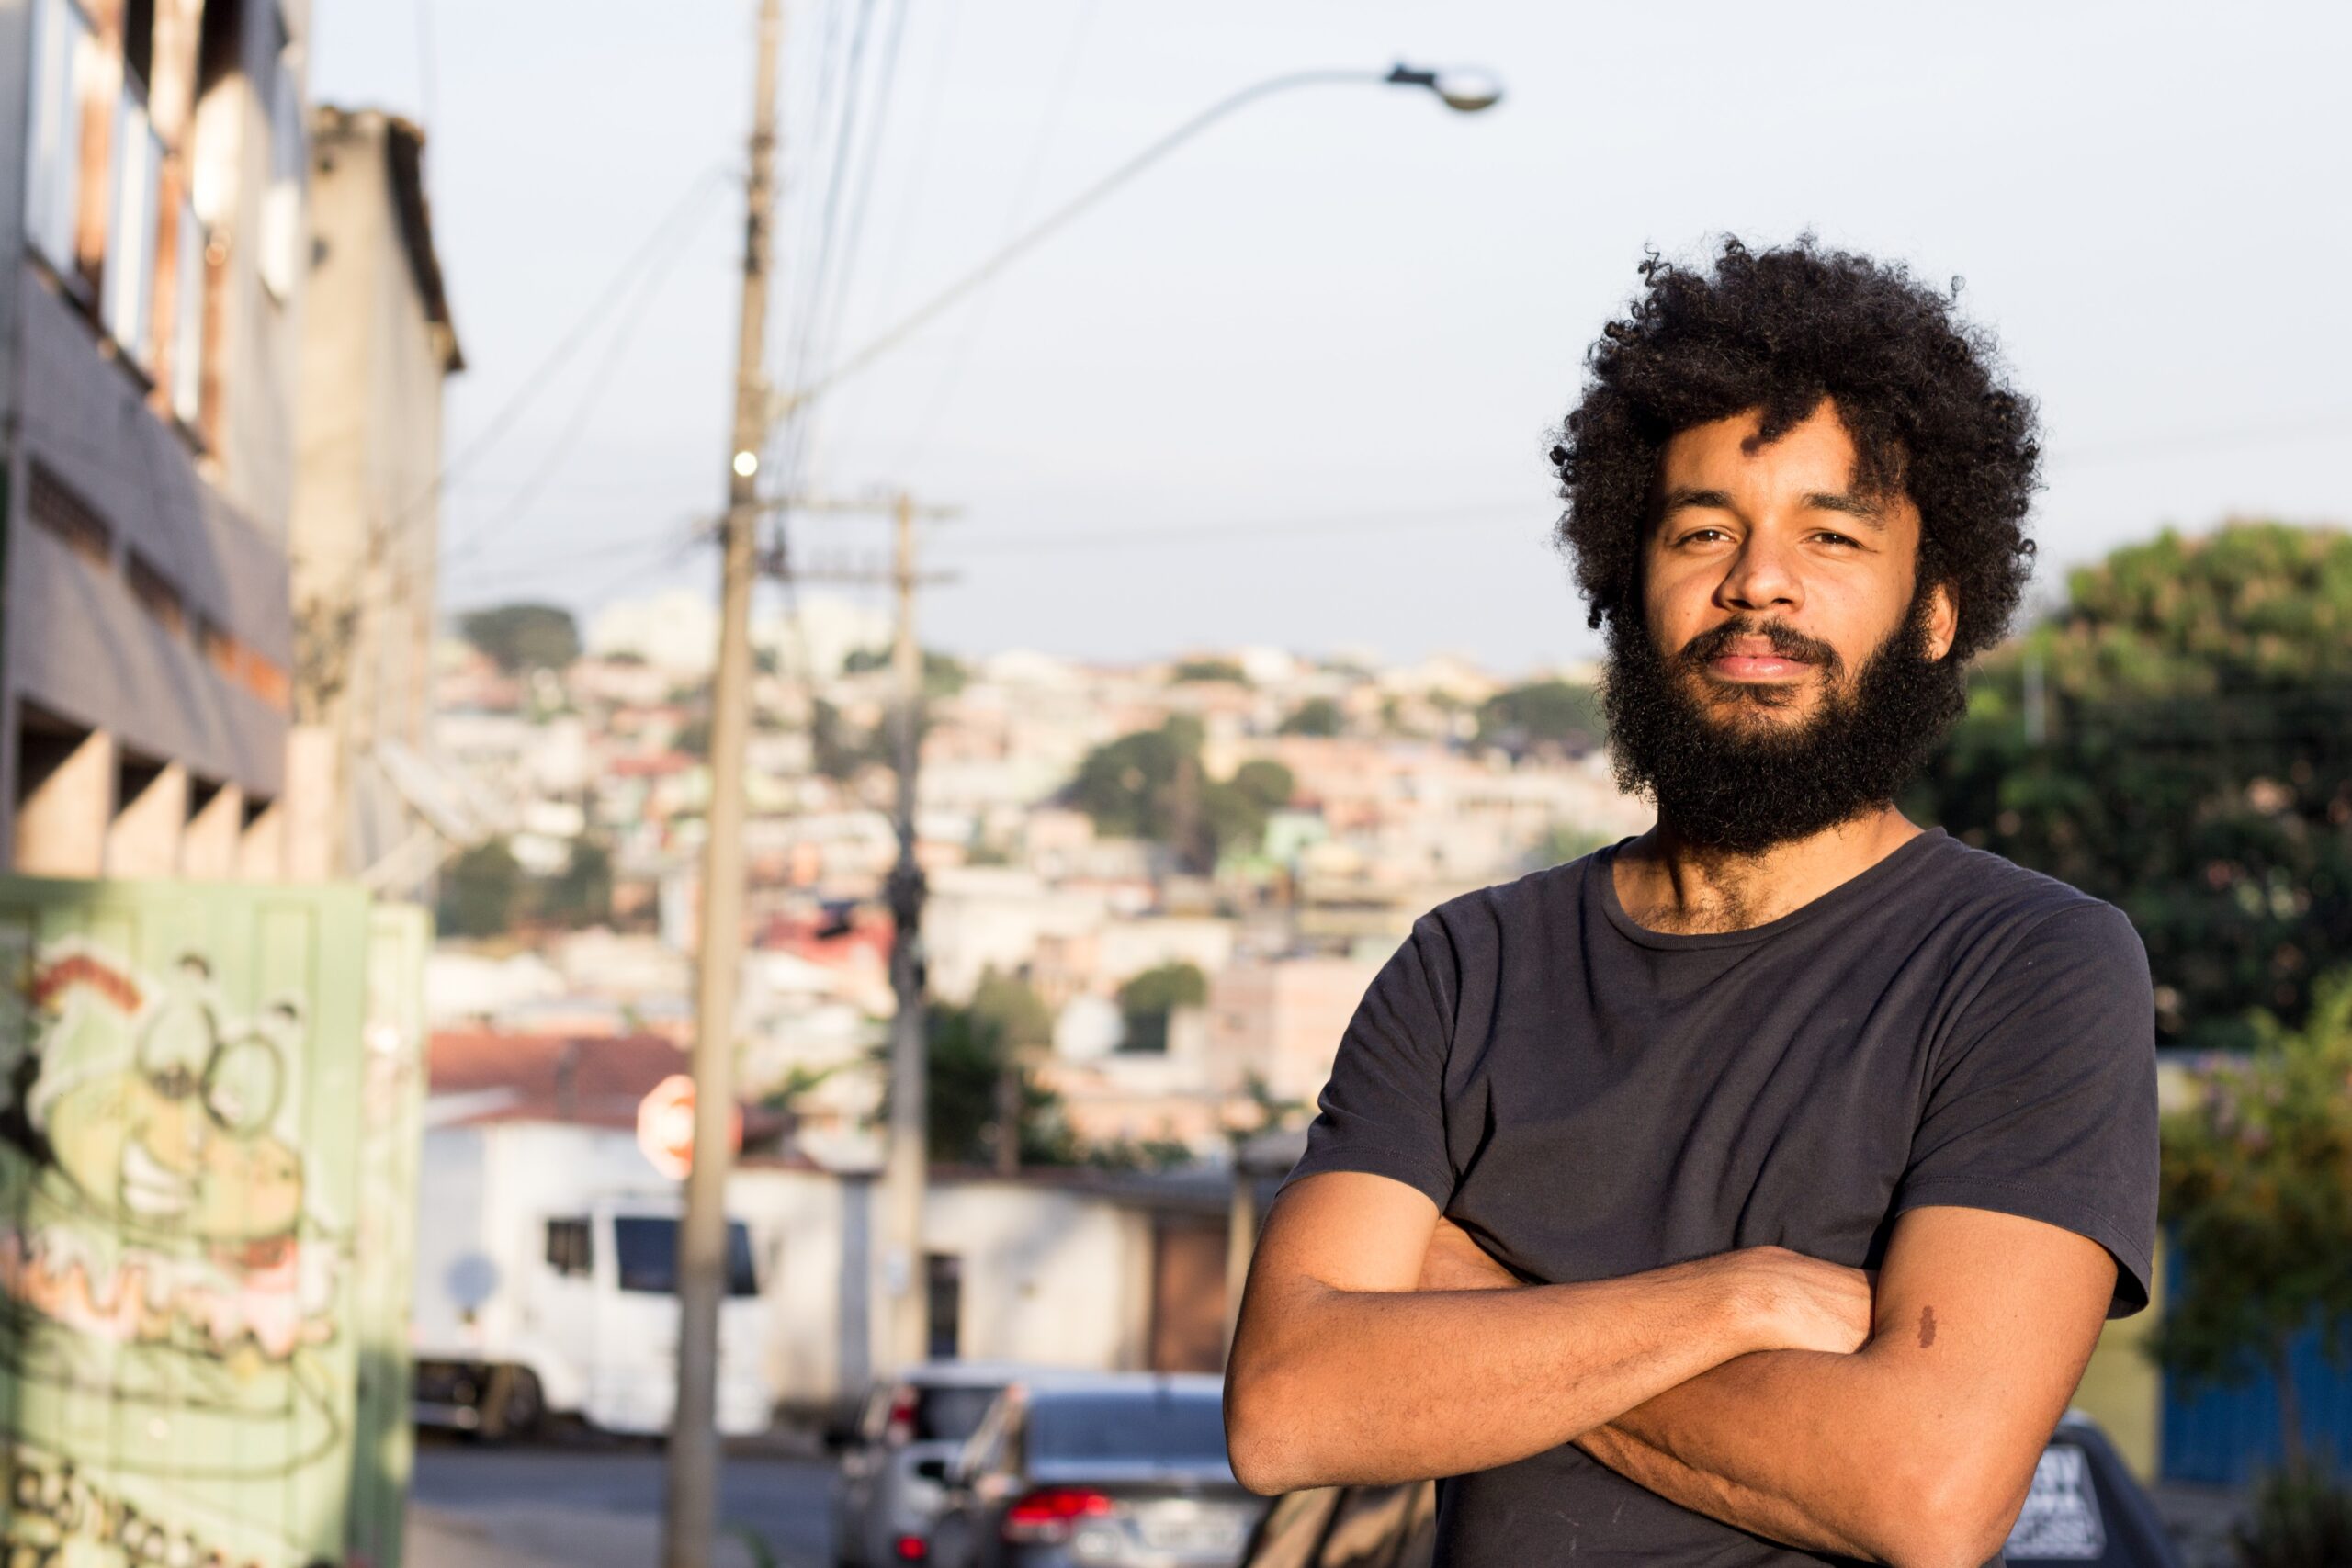 foto de Gabriel Martins, homem negro com cabelo afro em frente a uma favela